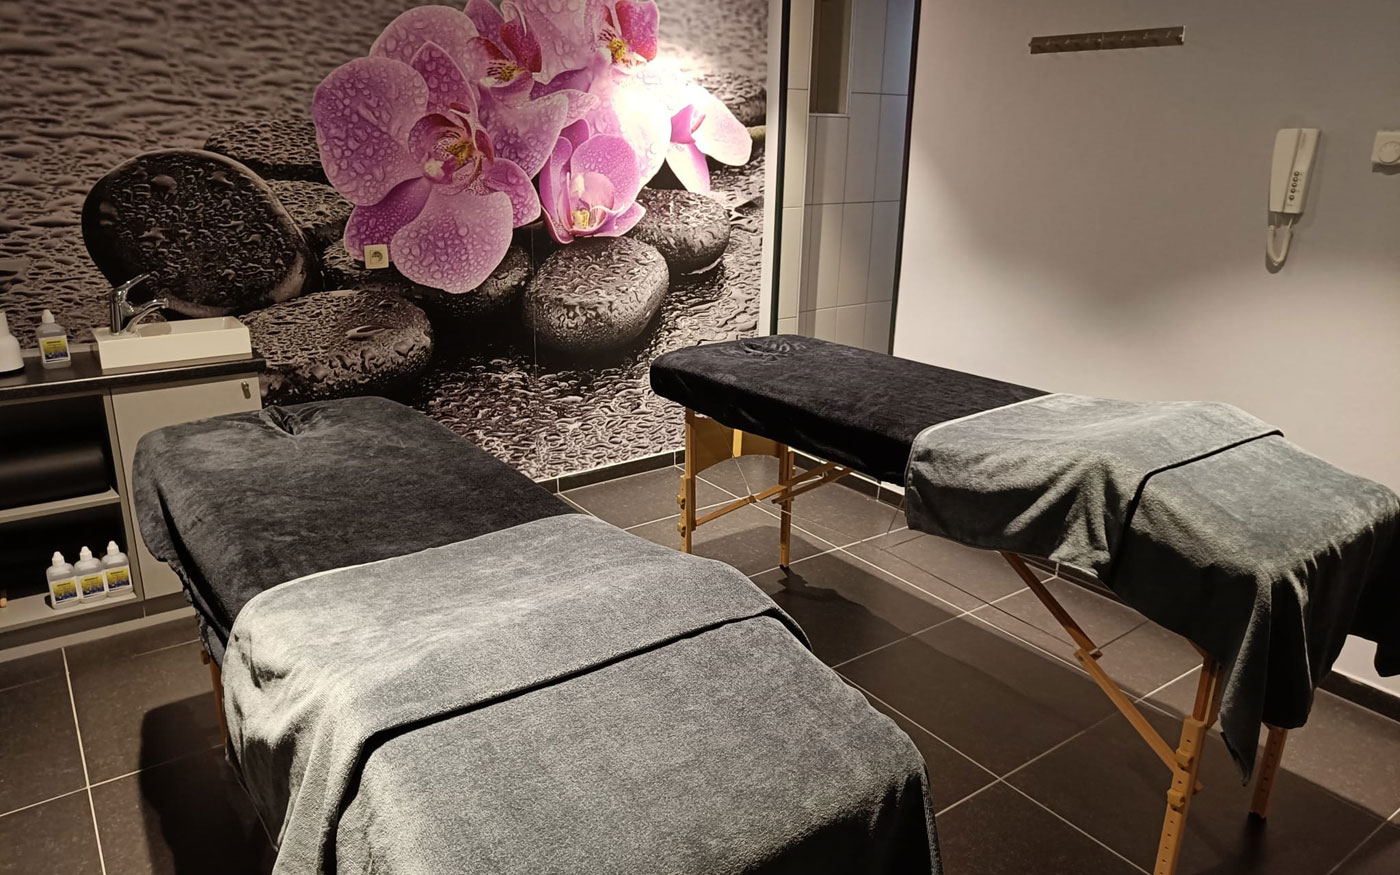 Super deluxe massage arrangement | B-Relaxed